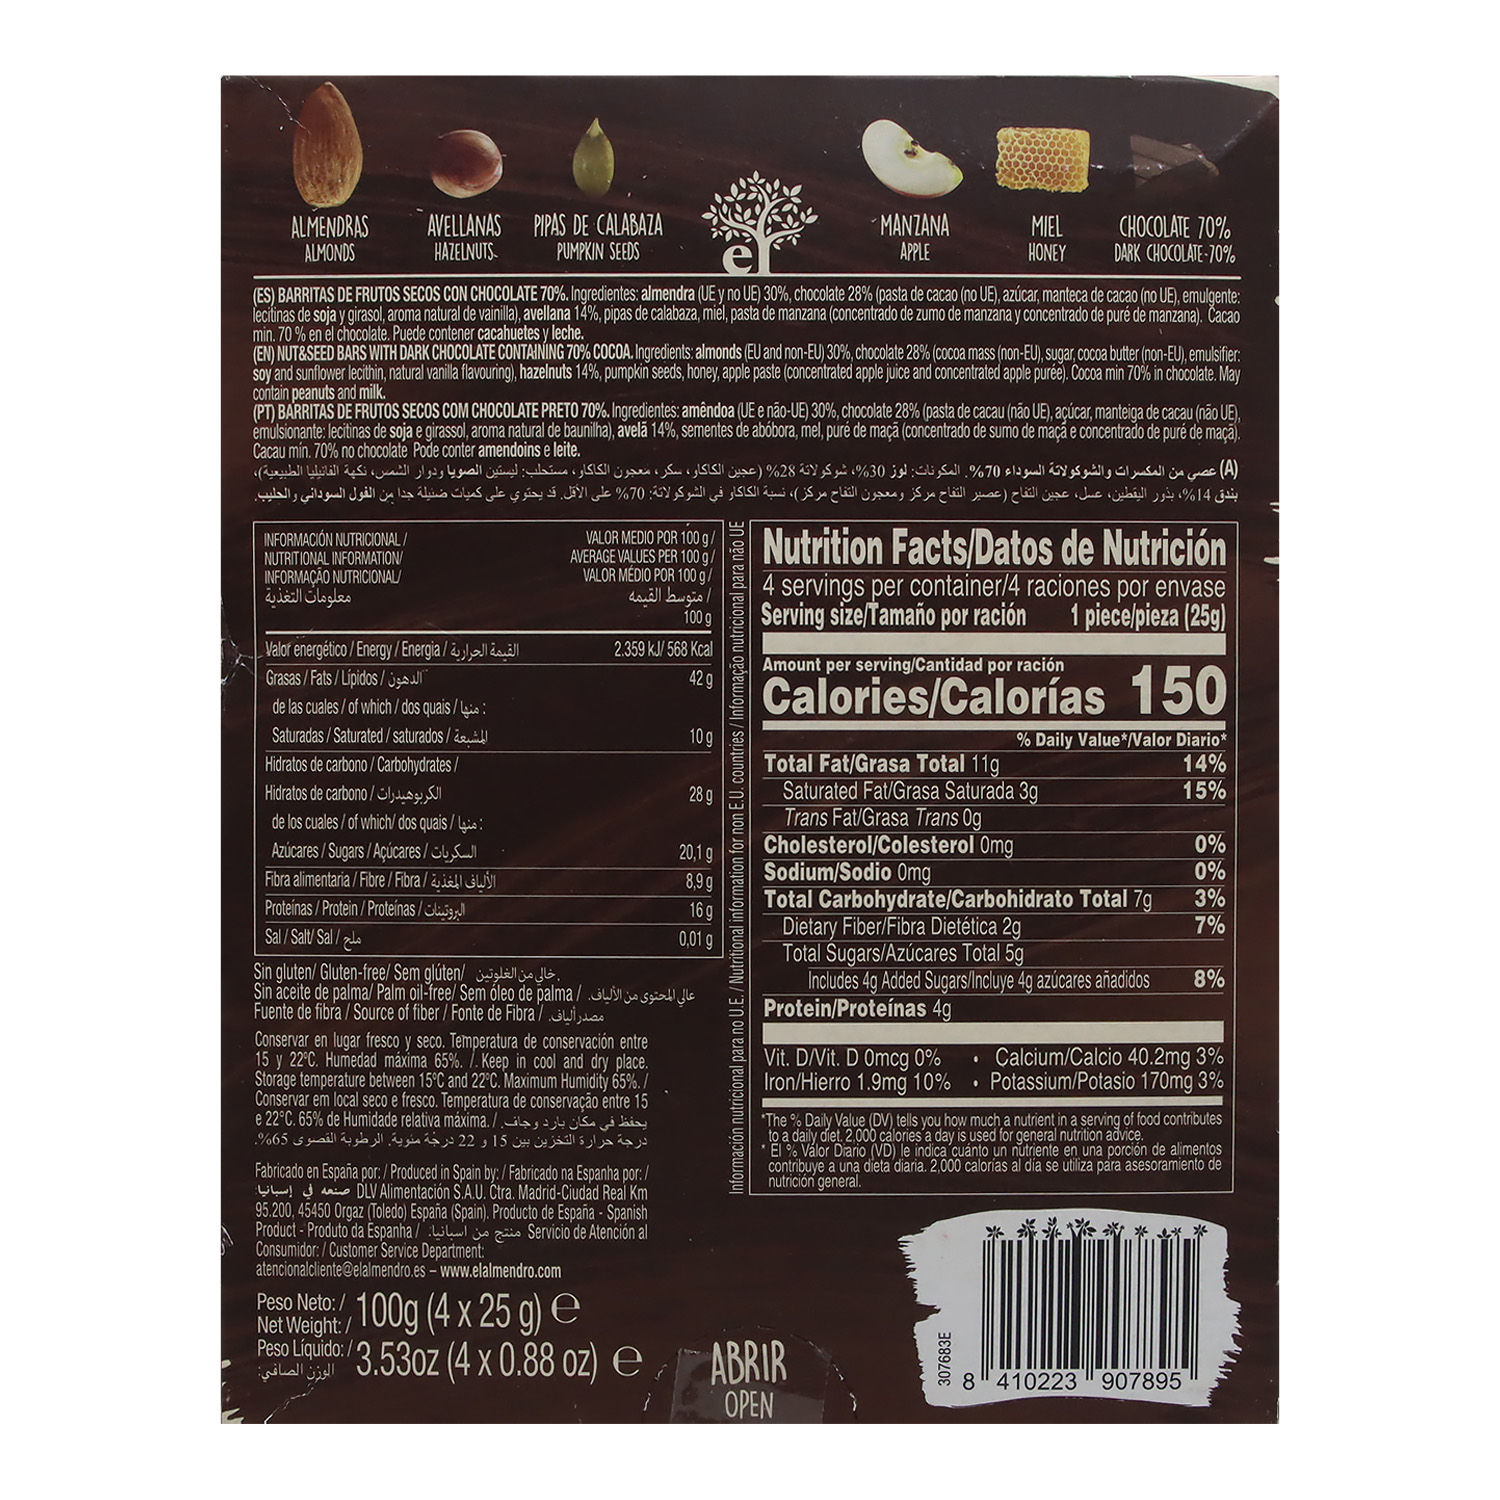 Barra Almendra Chocolate Oscuro 70% El Almendro